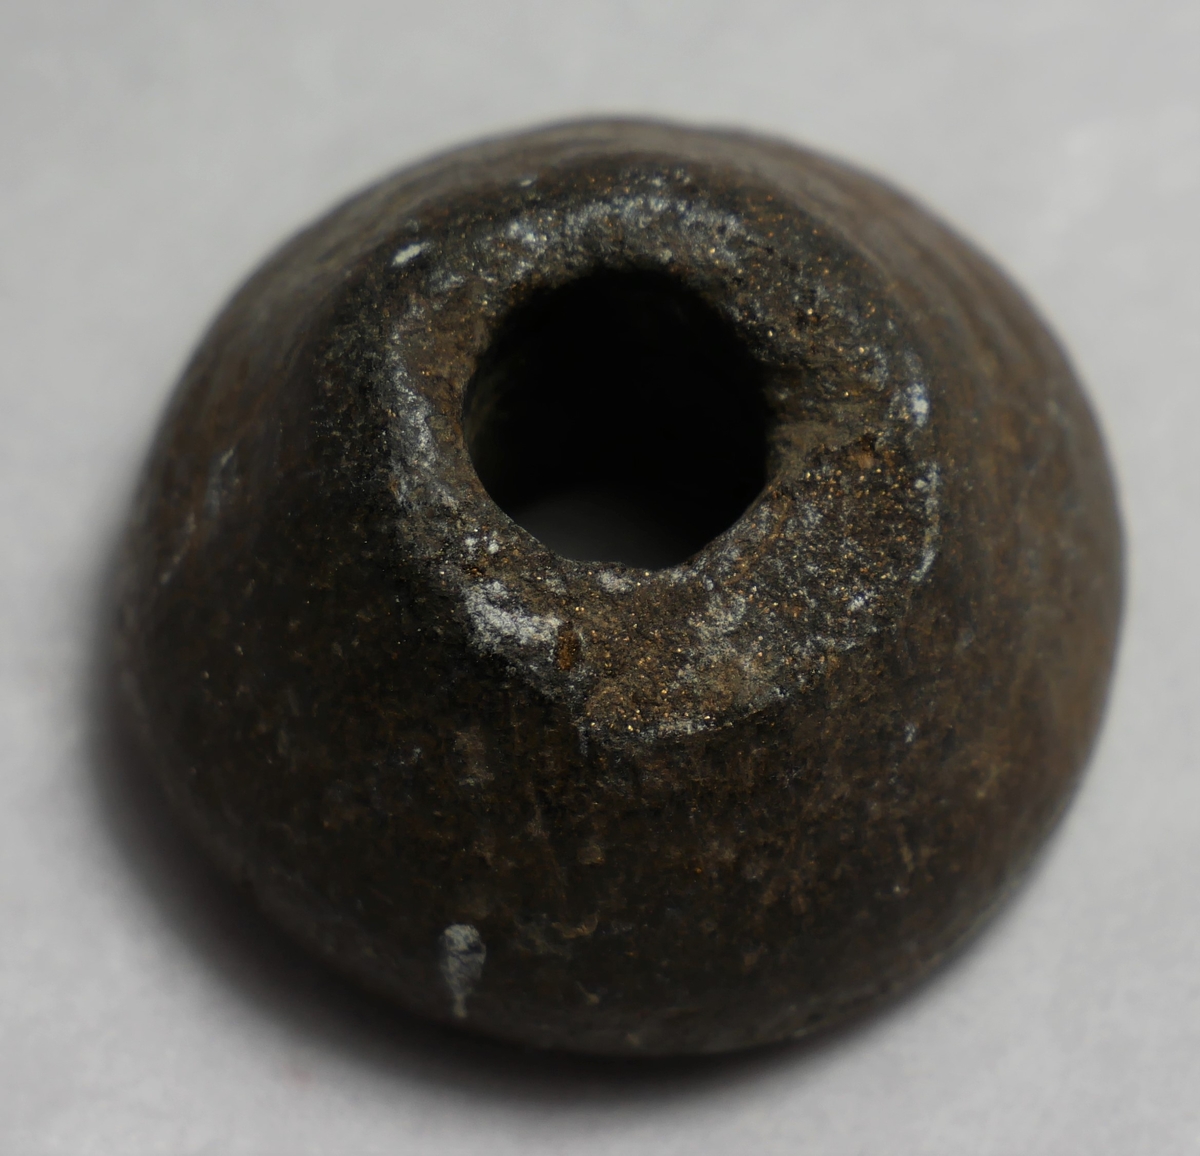 1 (spinnehjul) haandsnellehjul.

Konisk haandsnellehjul av brun sten. Diameter i nedre og øvre ende samt høide er 3,5,  1,8
og 2 cm. Fundet i en aker i Hatlebakken i Kaupanger.
Gave fra Ole Hatleberg, Kaupanger.